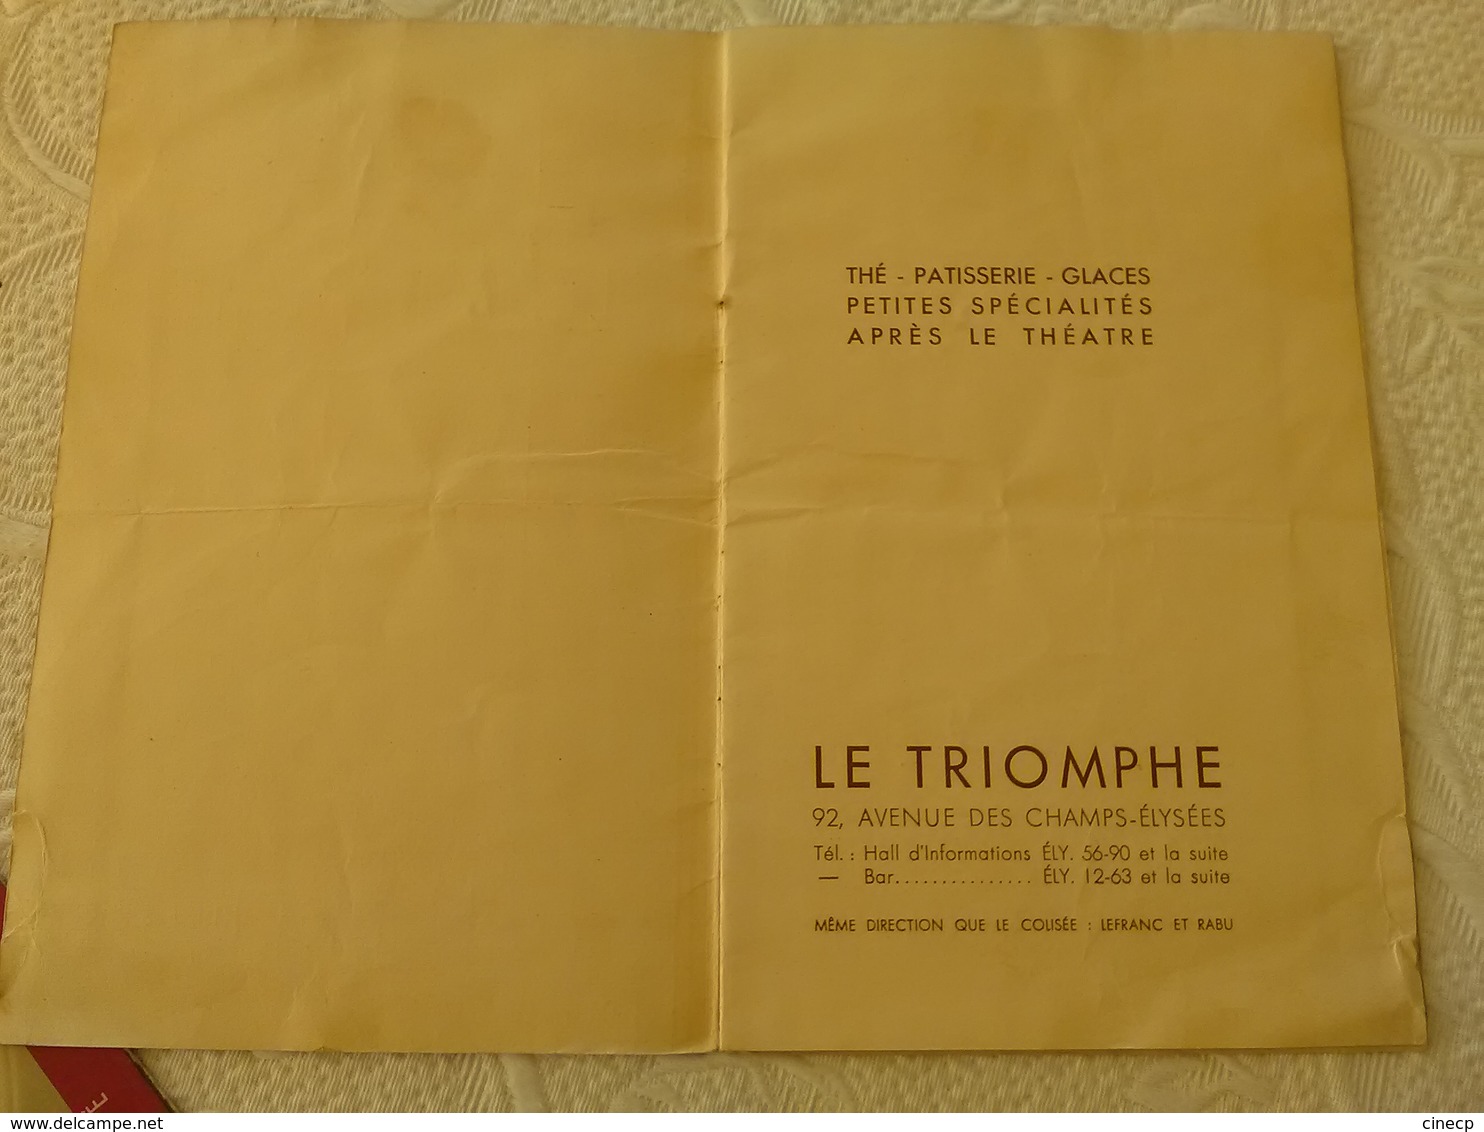 Lot Restaurant LE TRIOMPHE CHAMPS ELYSEES PARIS ensemble de menu s carte s du restaurant bar 1930' archive d'1 cuisinier